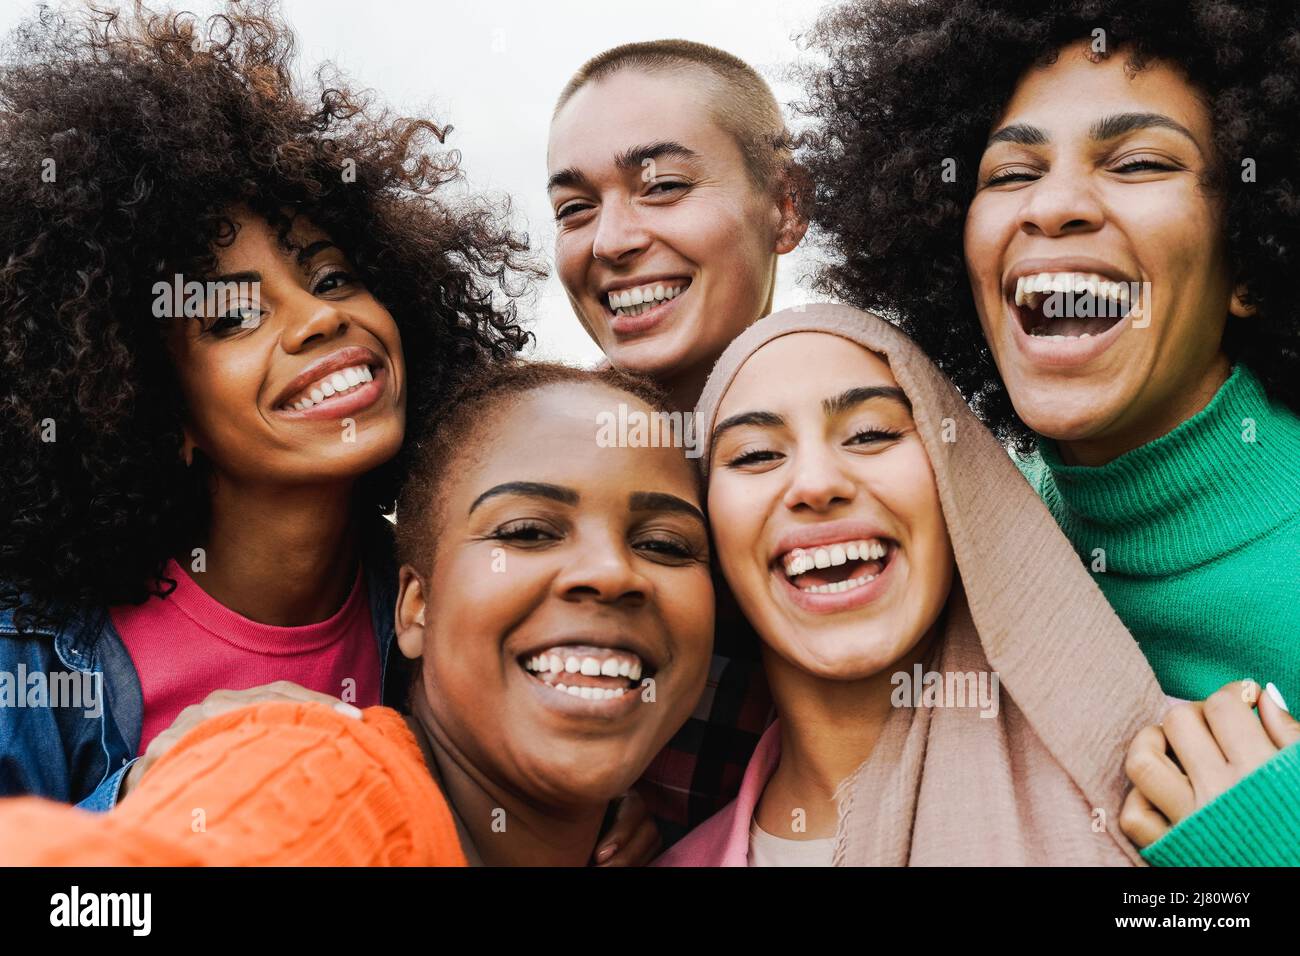 Le giovani donne multietniche che si divertono insieme all'aperto - Focus on Bald girl Face - Diversity lifestyle Concept Foto Stock